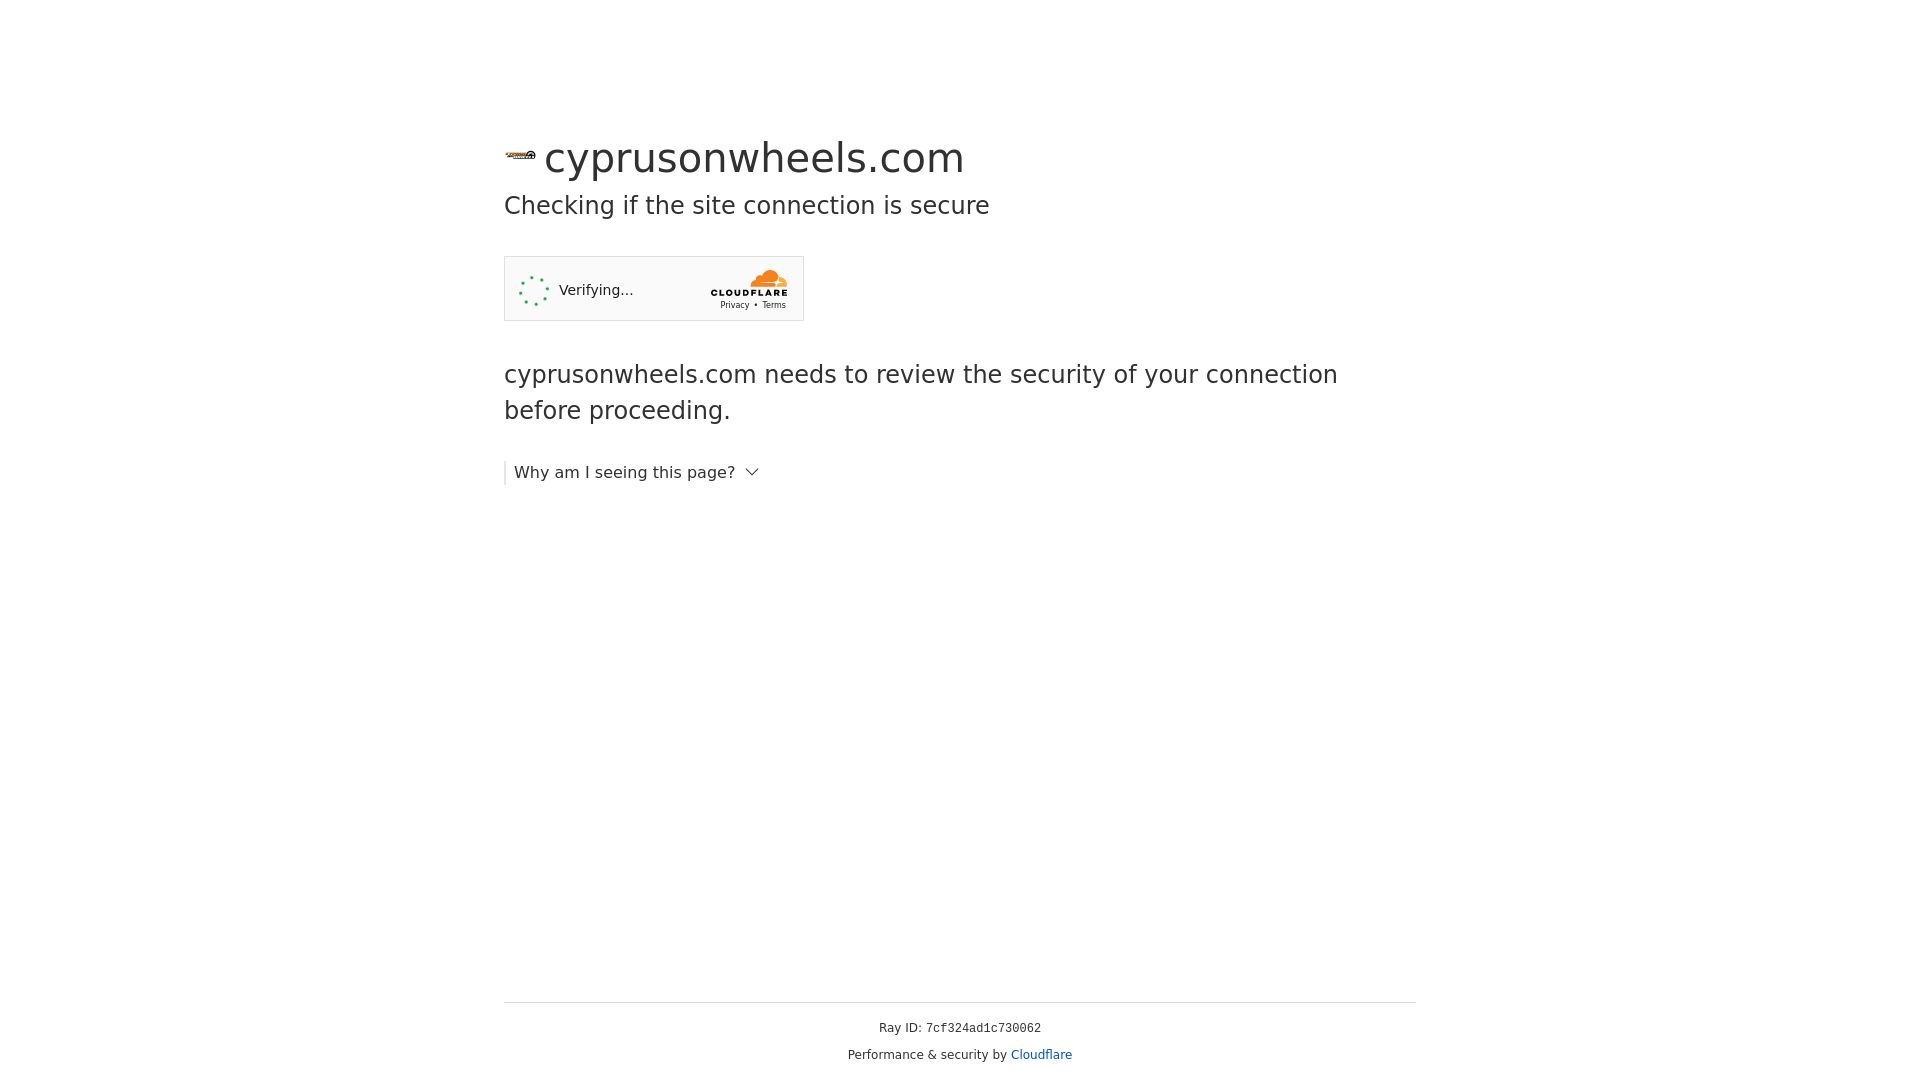 Status do site cyprusonwheels.com está   ONLINE